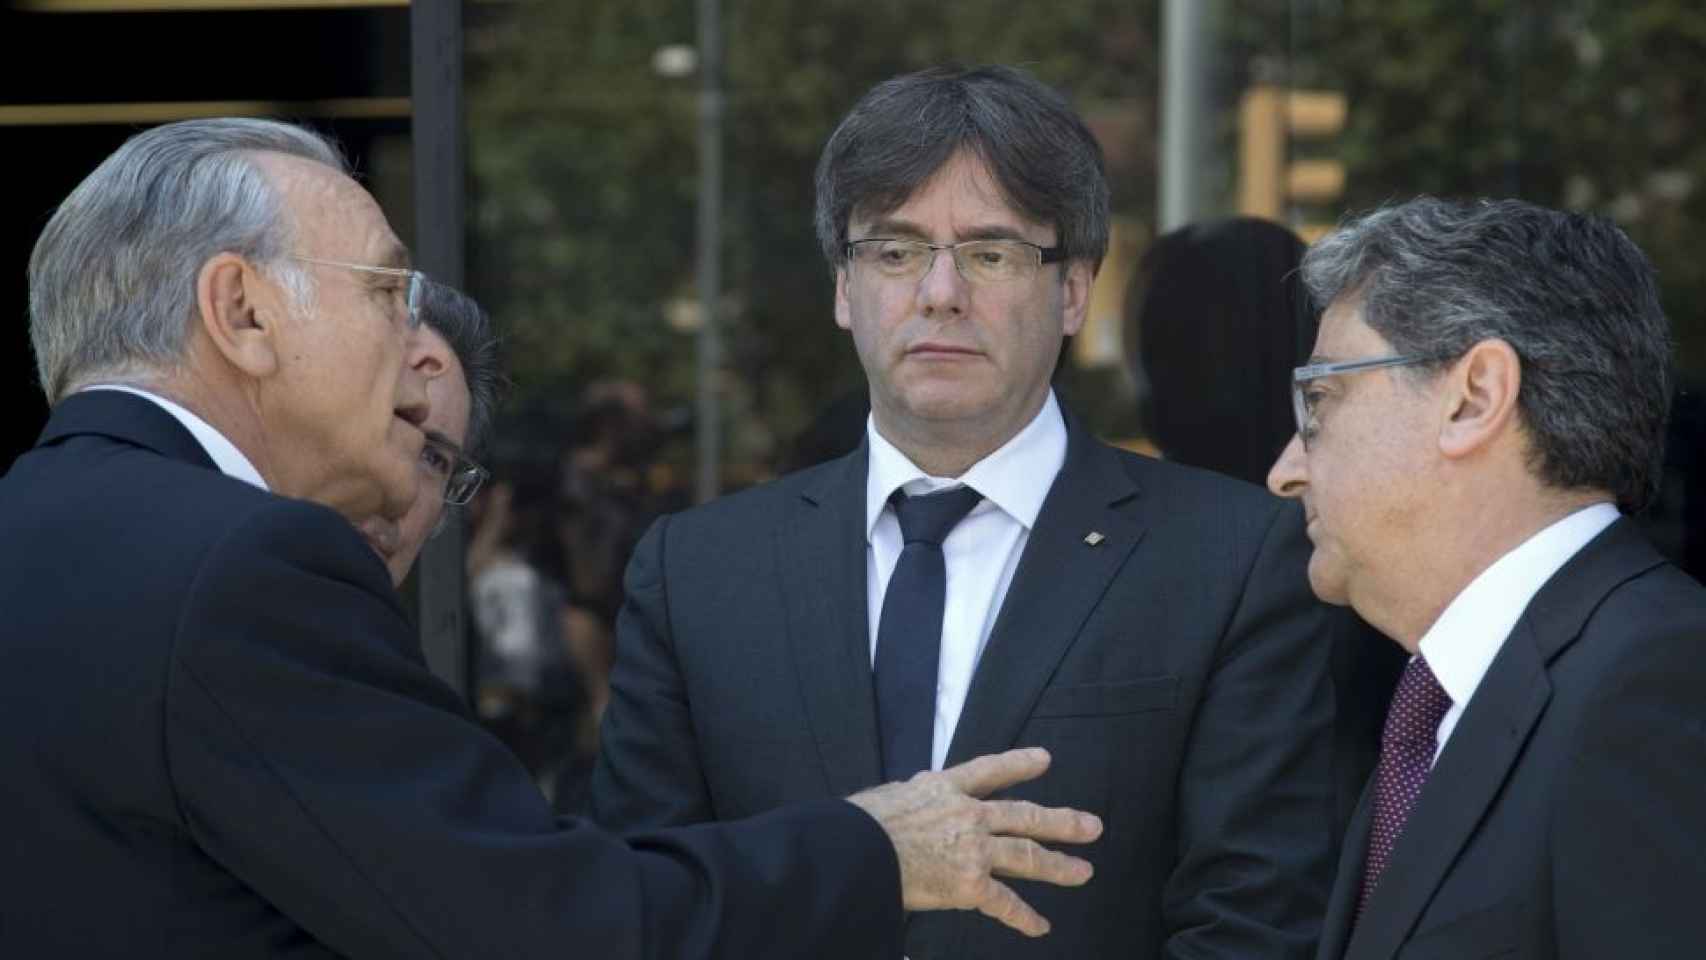 Isidro Fainé se dirige al delegado del Gobierno bajo la distante mirada del presidente de la Generalitat / EFE